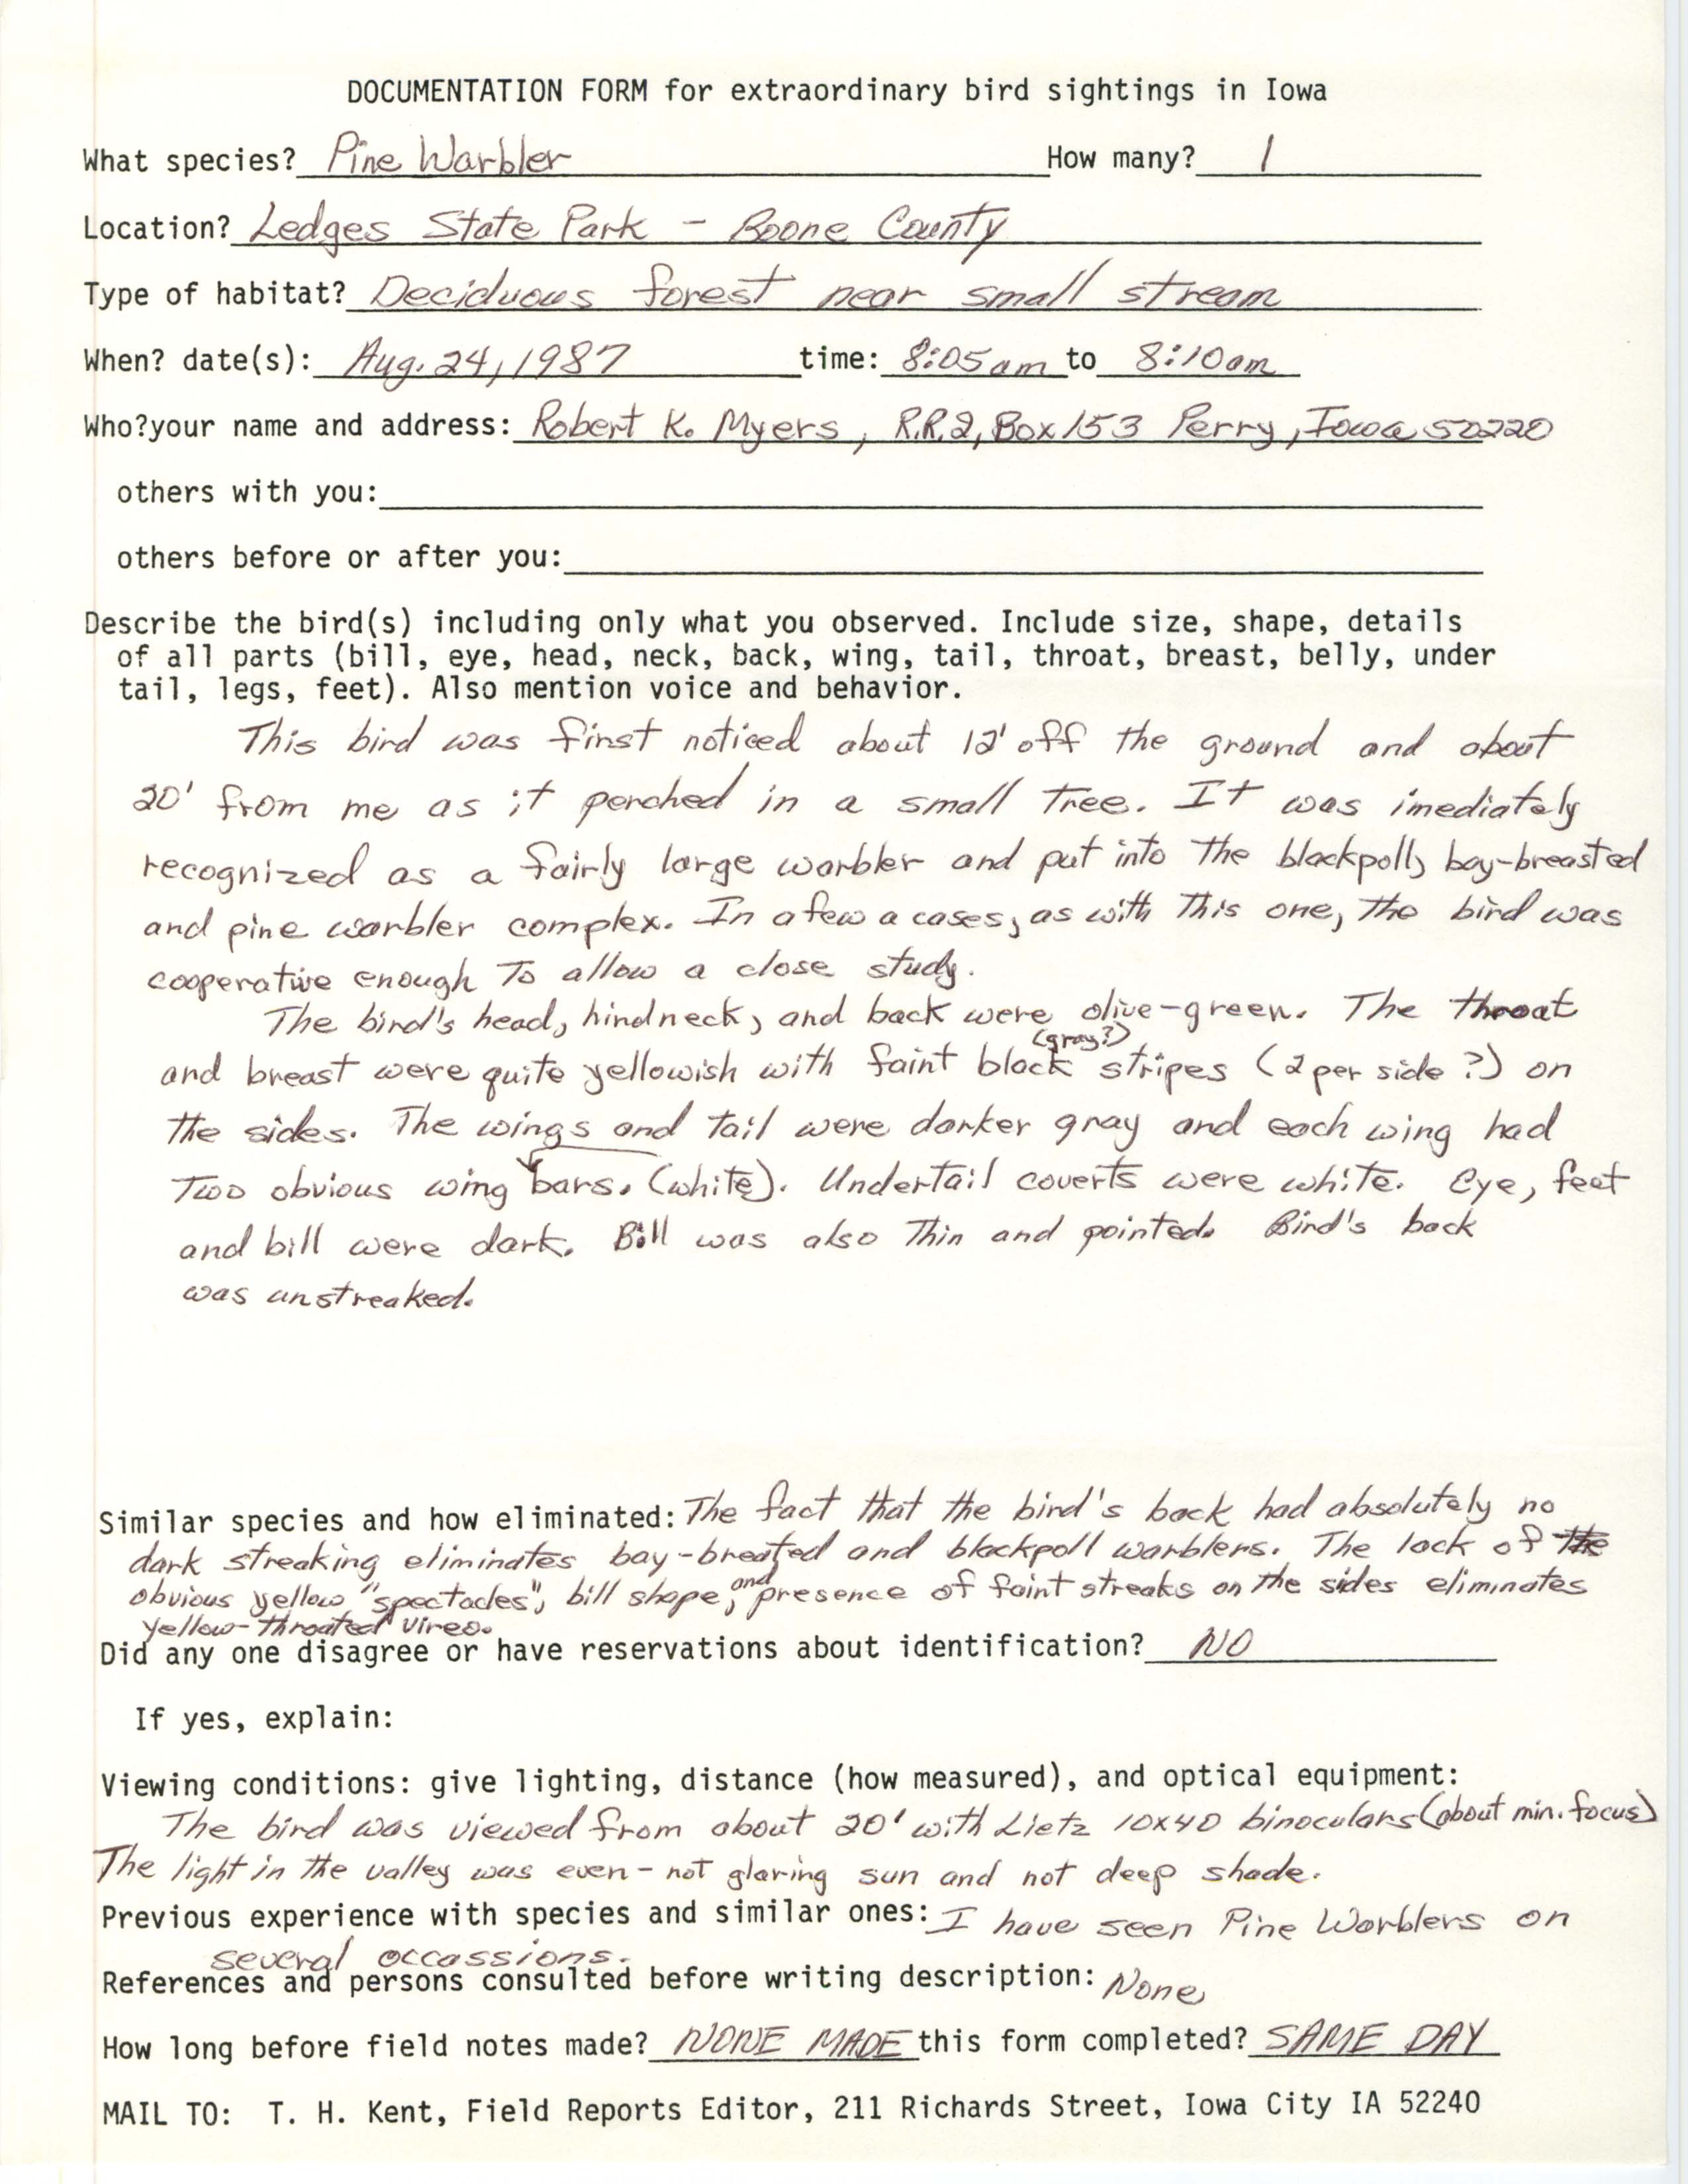 Rare bird documentation form for Pine Warbler at Ledges State Park, 1987